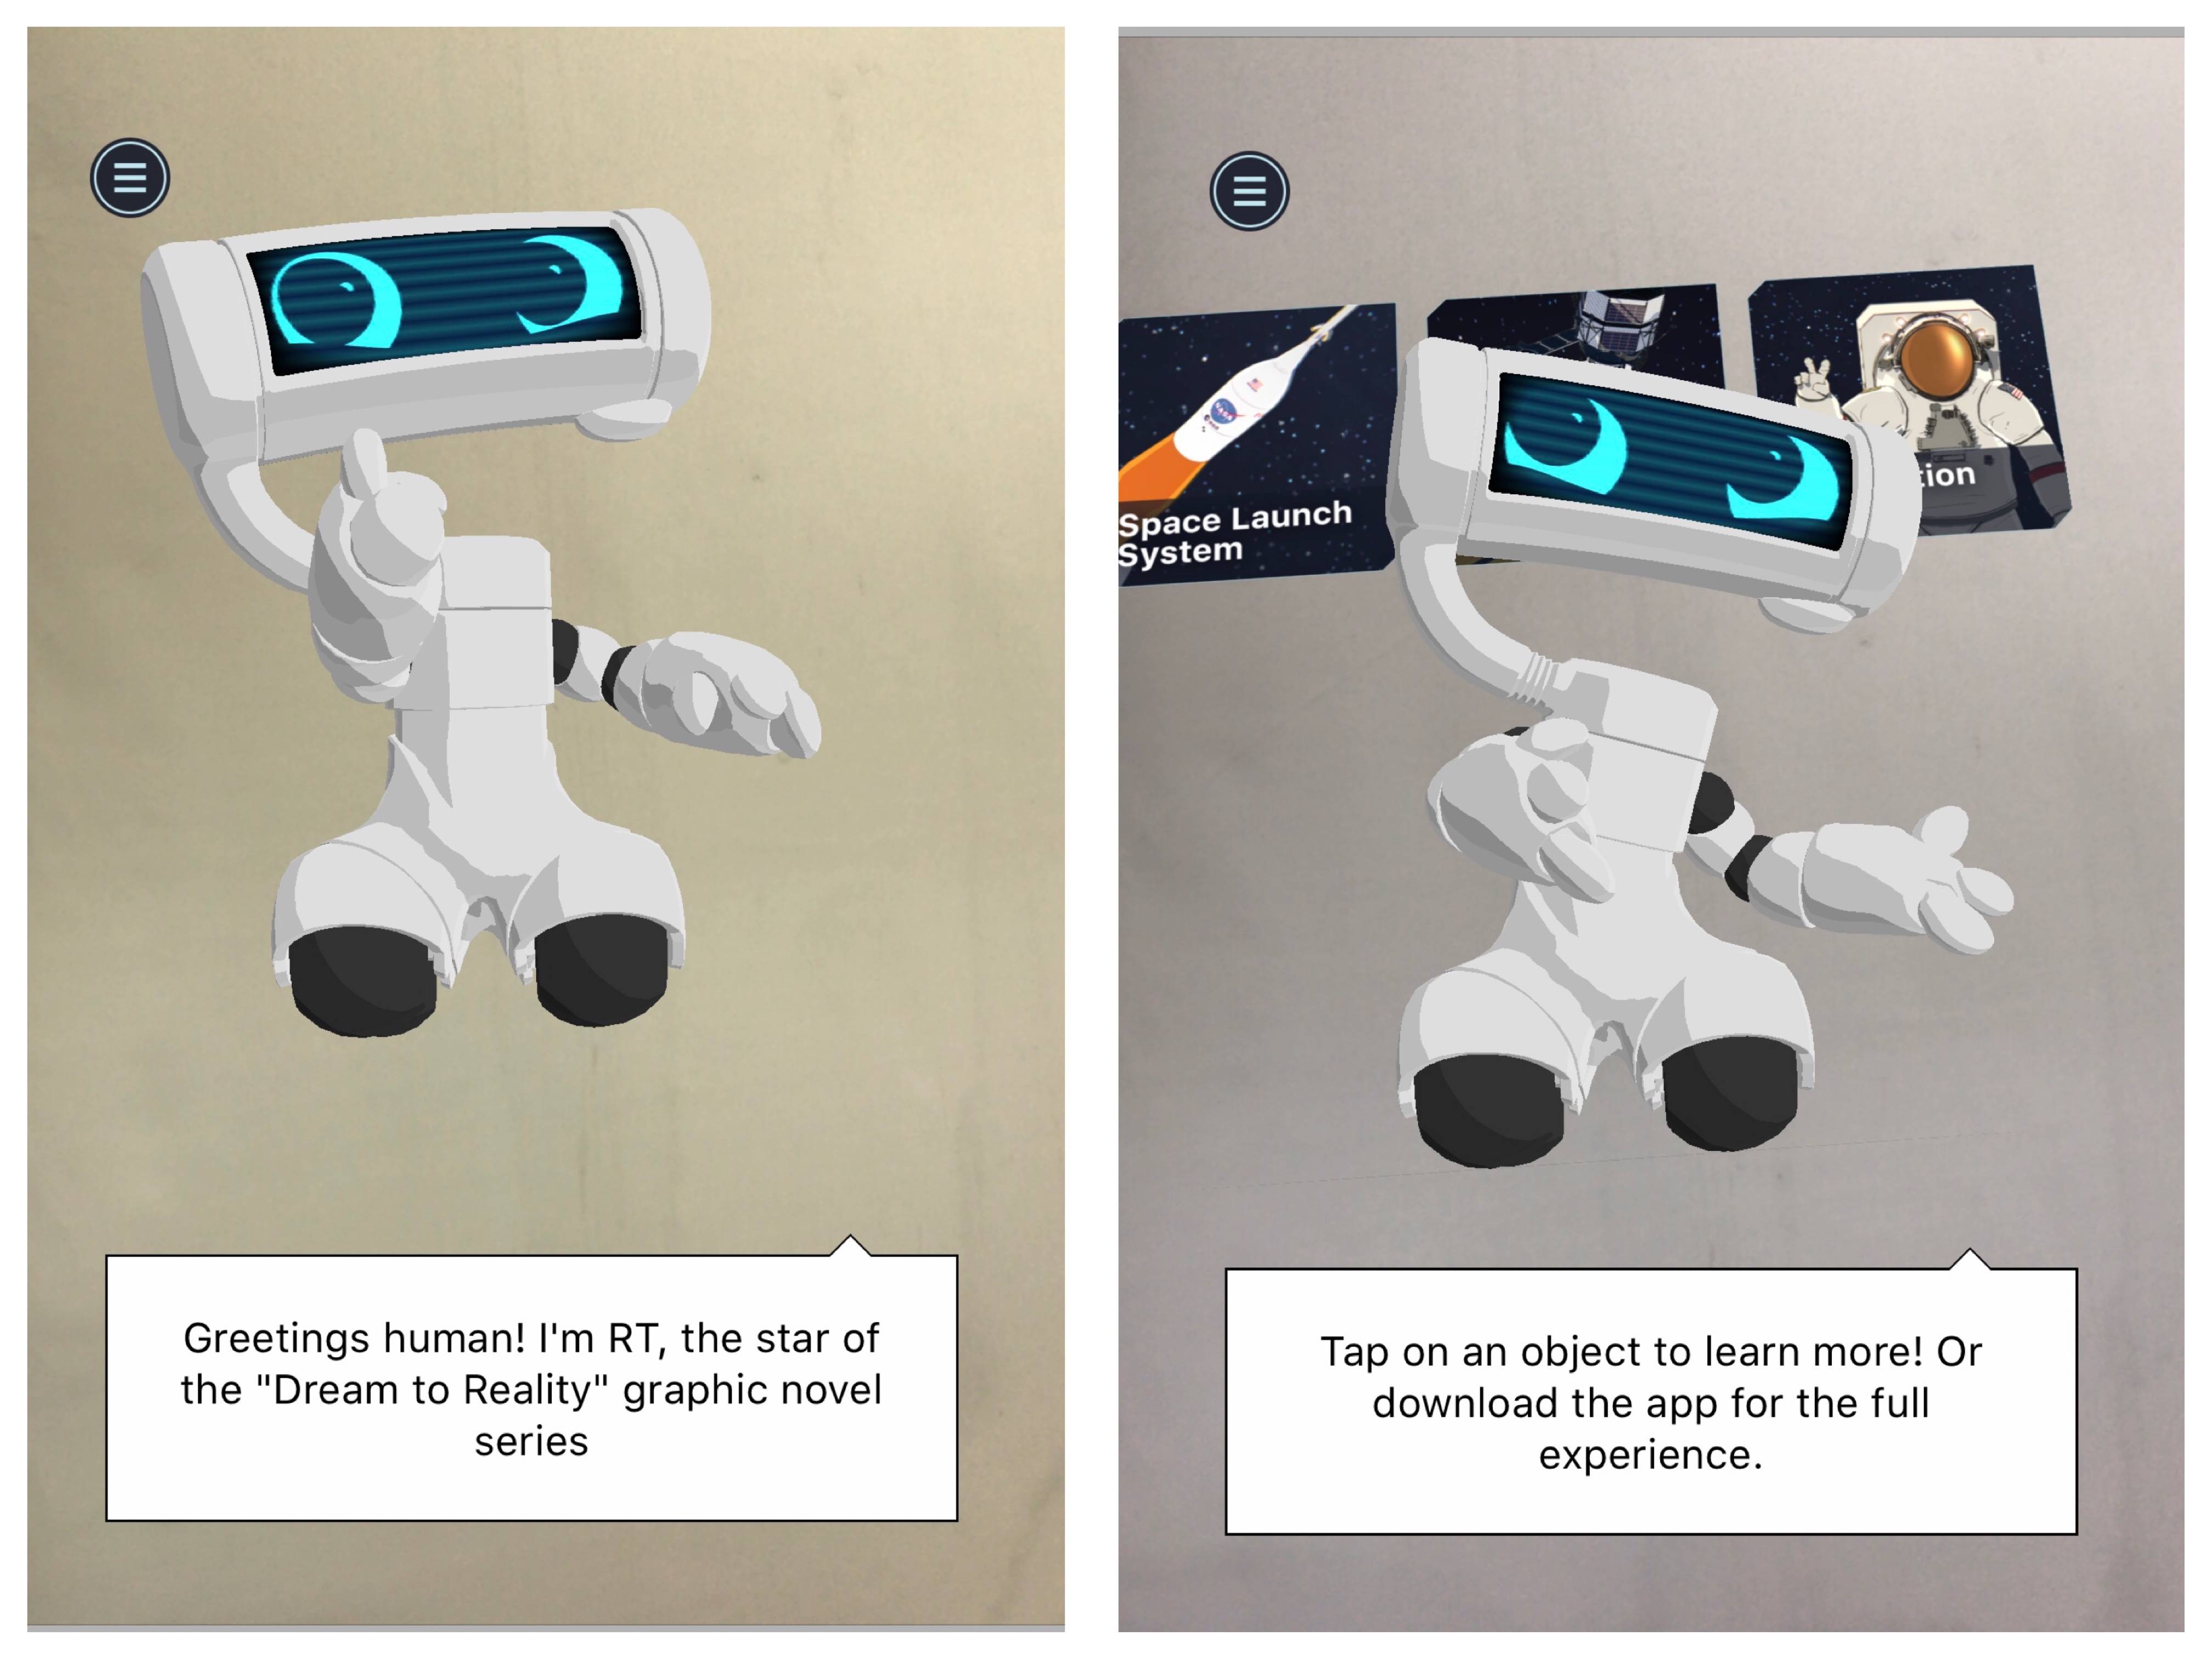 RT1 - La NASA rilascia la prima graphic novel interattiva, puoi trovarti faccia a faccia con robot, tute spaziali e avamposti lunari